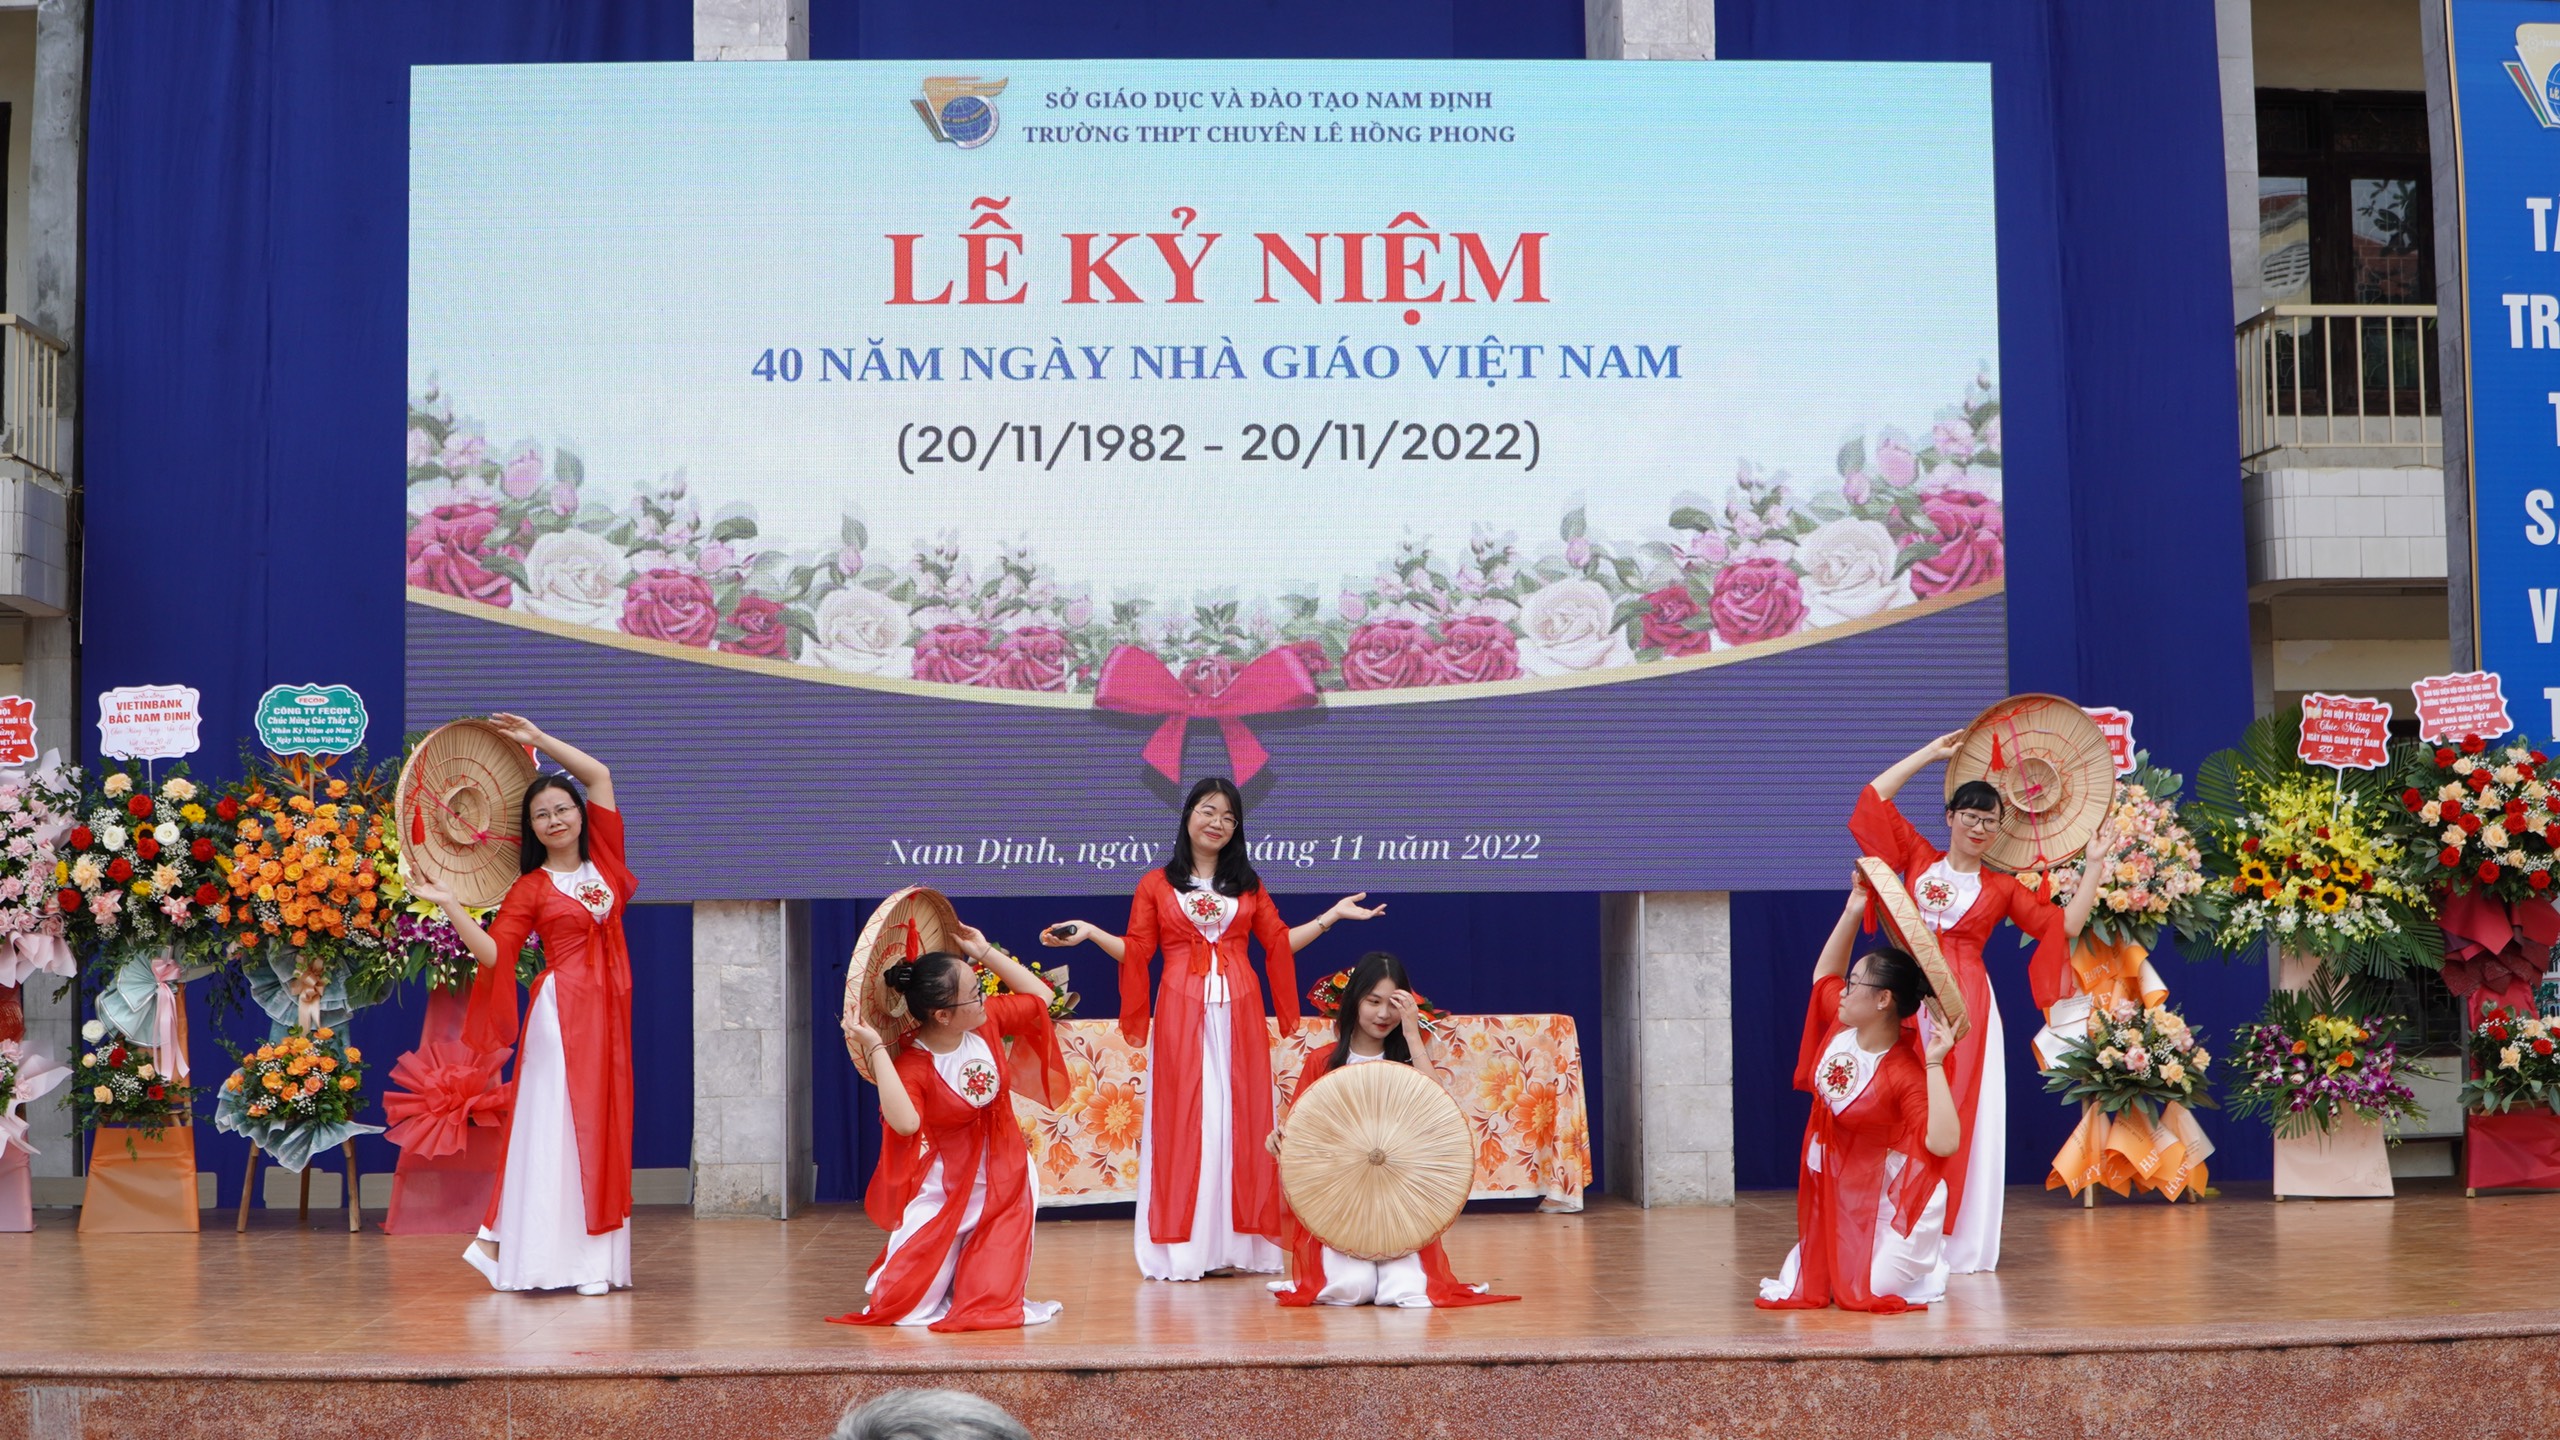 Trường THPT chuyên Lê Hồng Phong tổ chức Lễ Kỉ niệm 40 năm ngày Nhà giáo Việt Nam 20/11